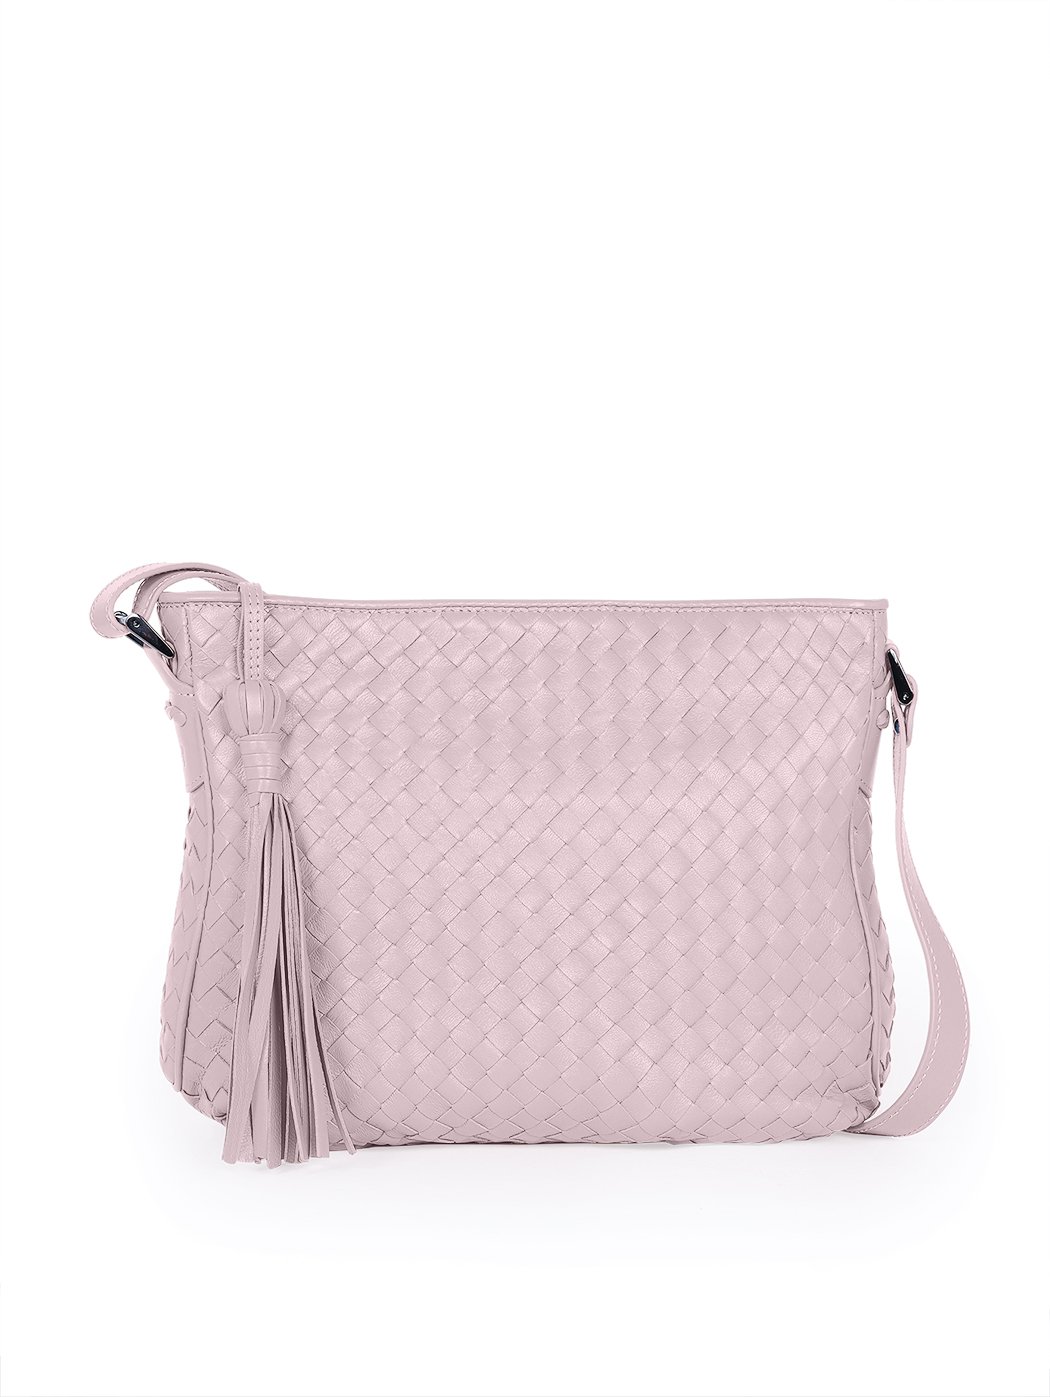 Женская плетеная сумка кросс – боди коллекции Intrecci розового цвета